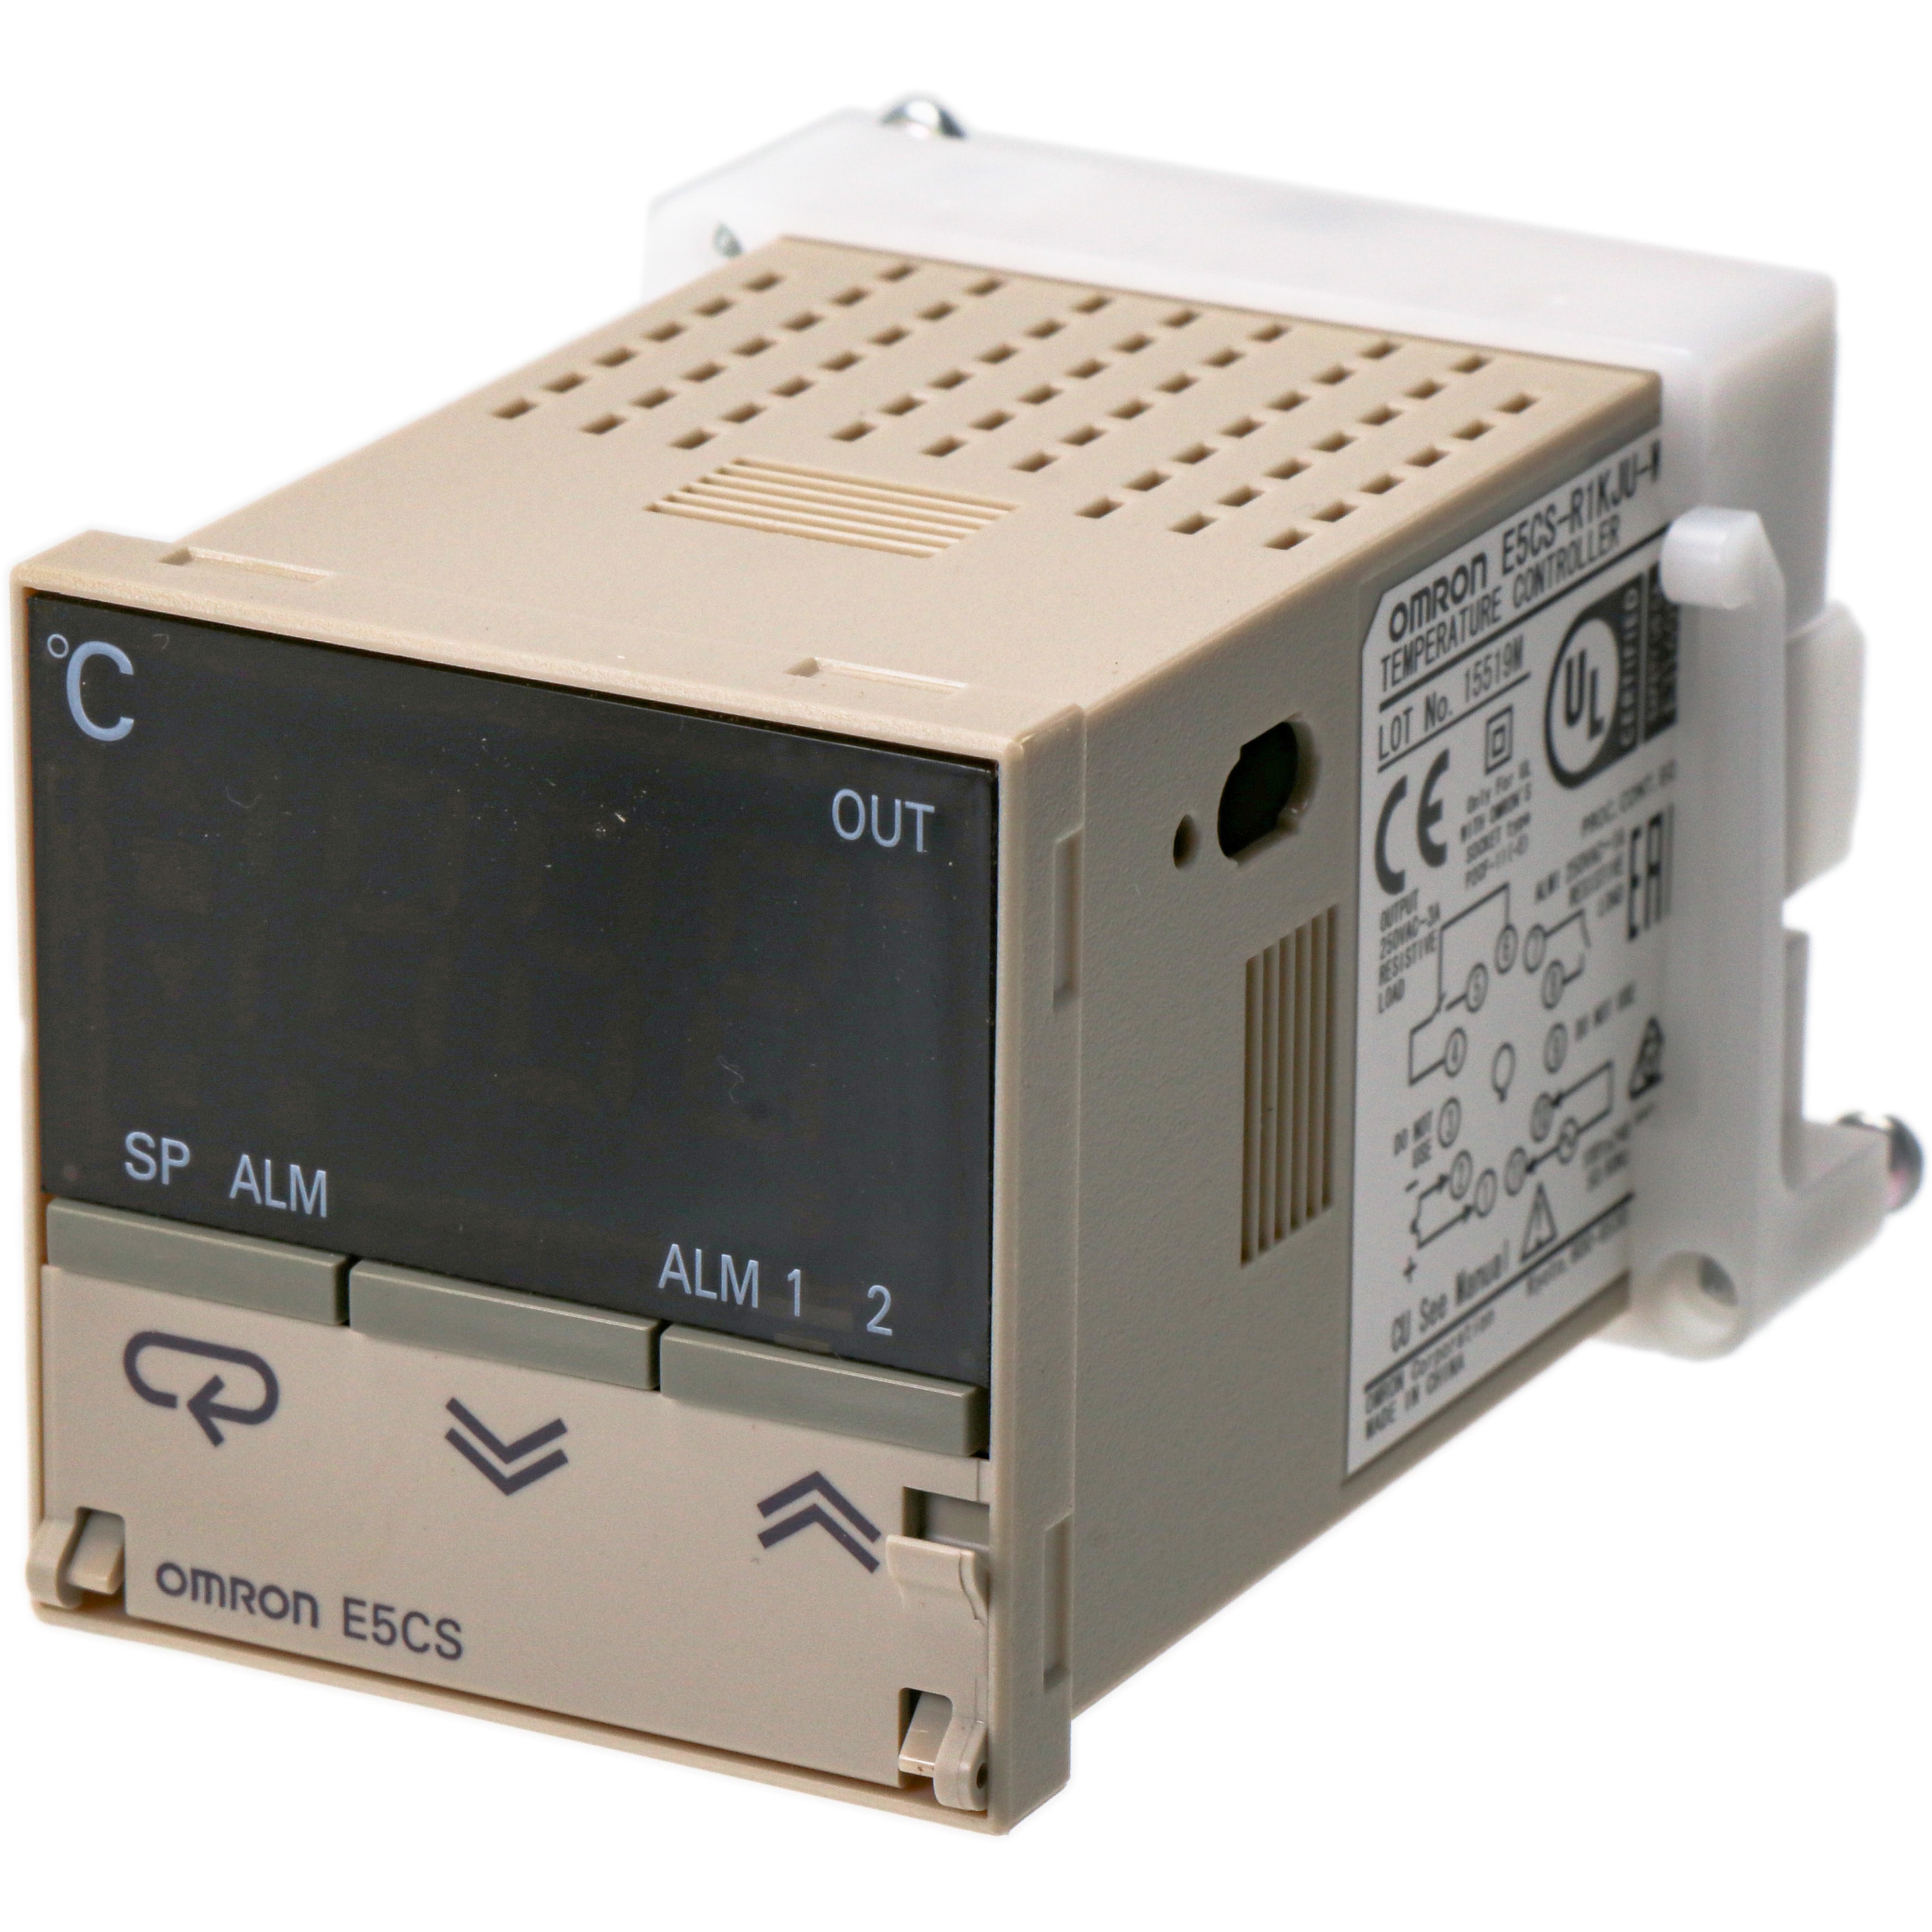 omron デジタルサーモ サーミスタ測温体入力 温度範囲30-110℃ (E5LC-7) - 3